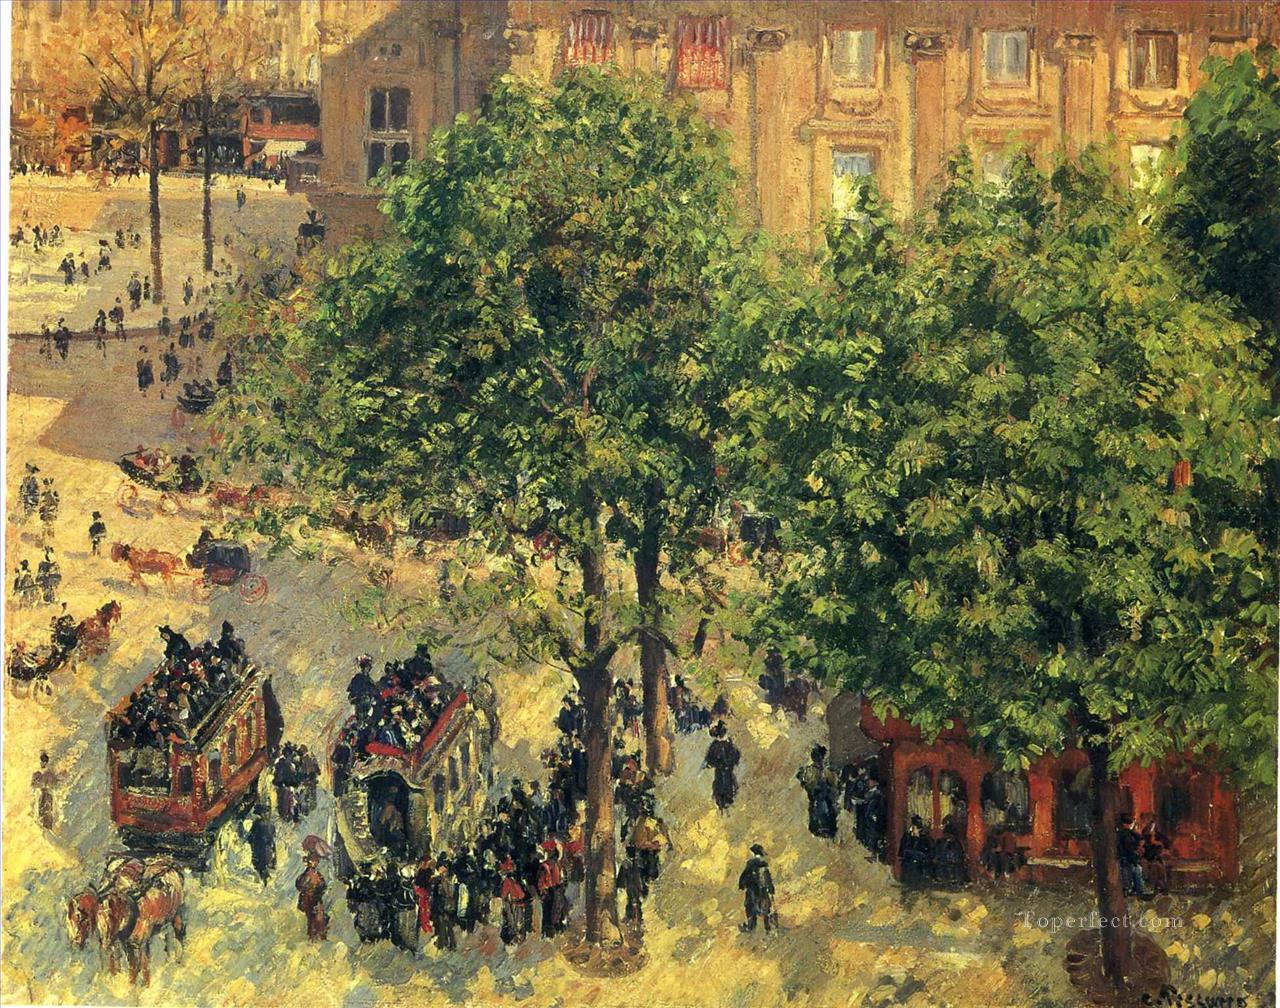 フランセ劇場広場 1898年春 カミーユ・ピサロ パリジャン油絵